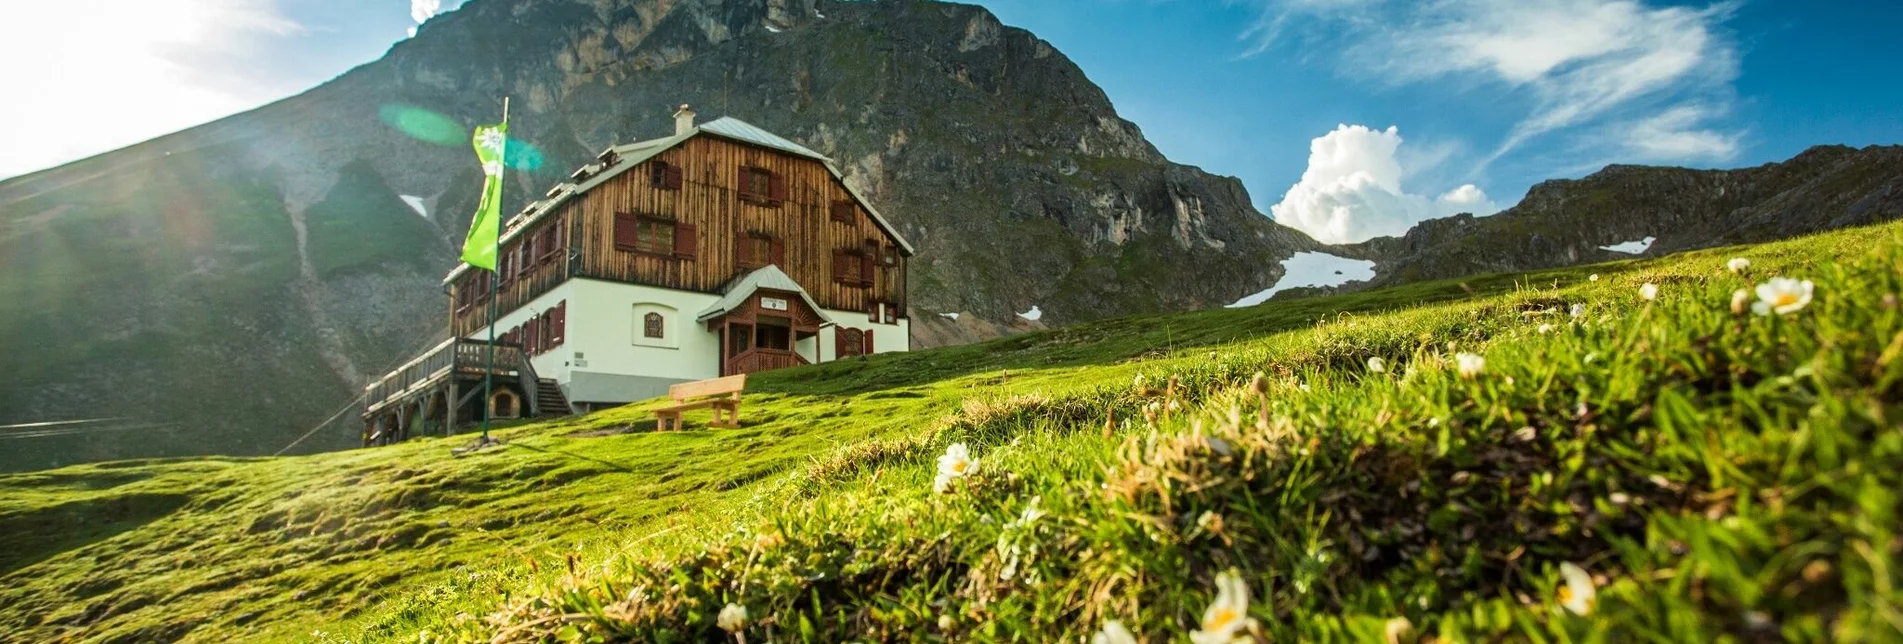 Via Ferrata Via Ferrata Eselstein Westwand - Touren-Impression #1 | © Alpenverein Austria